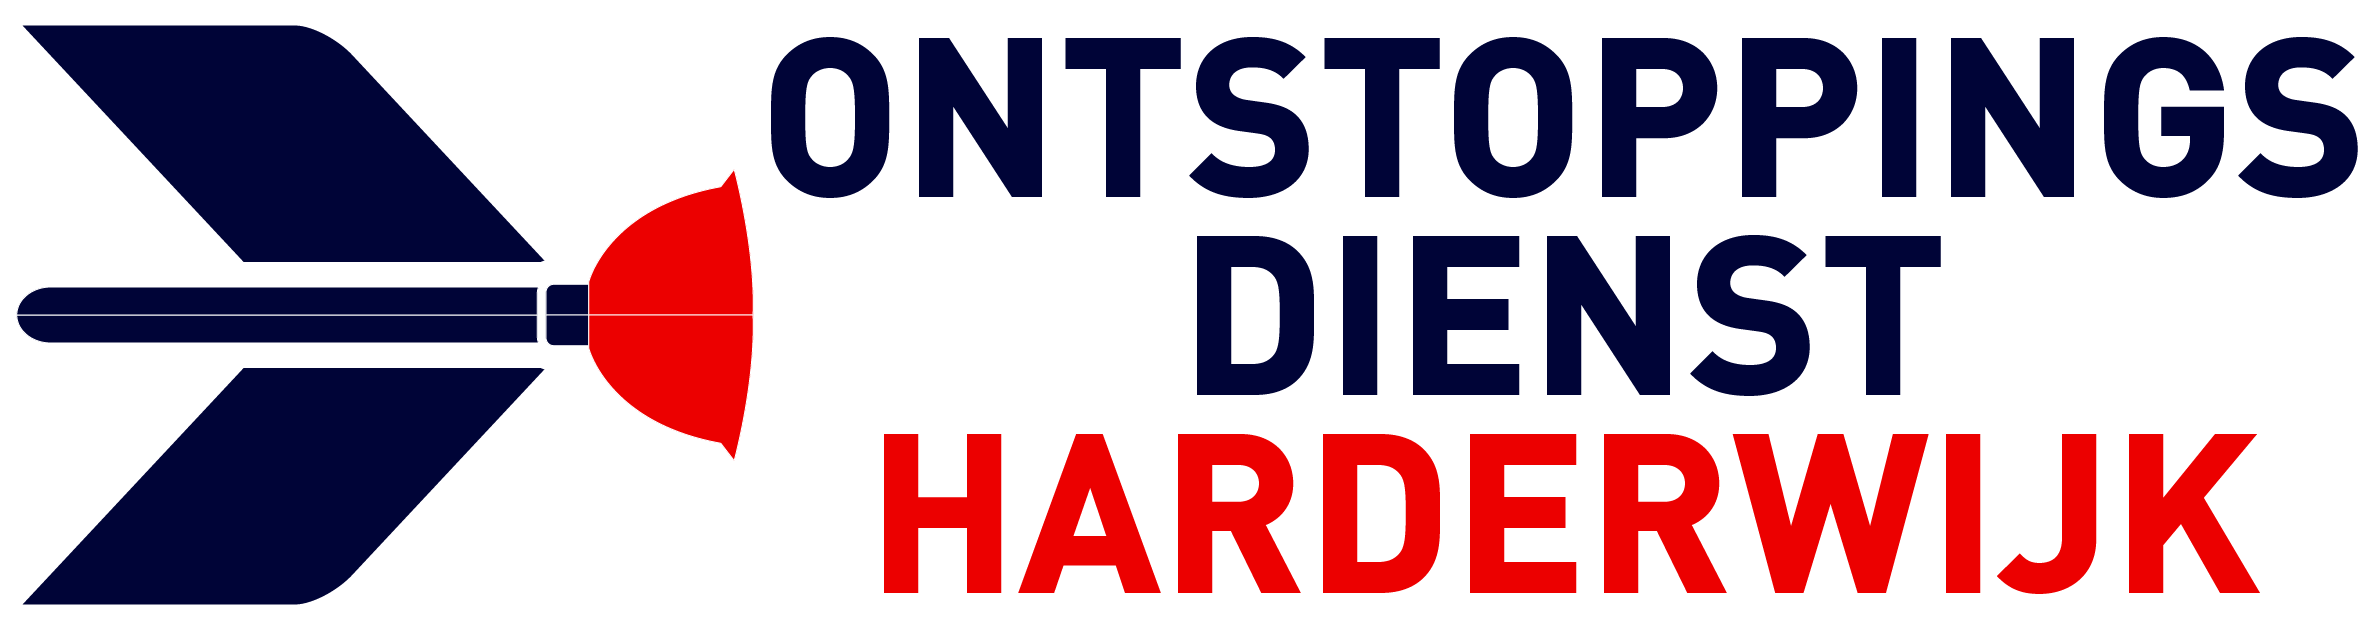 Ontstoppingsdienst Harderwijk logo